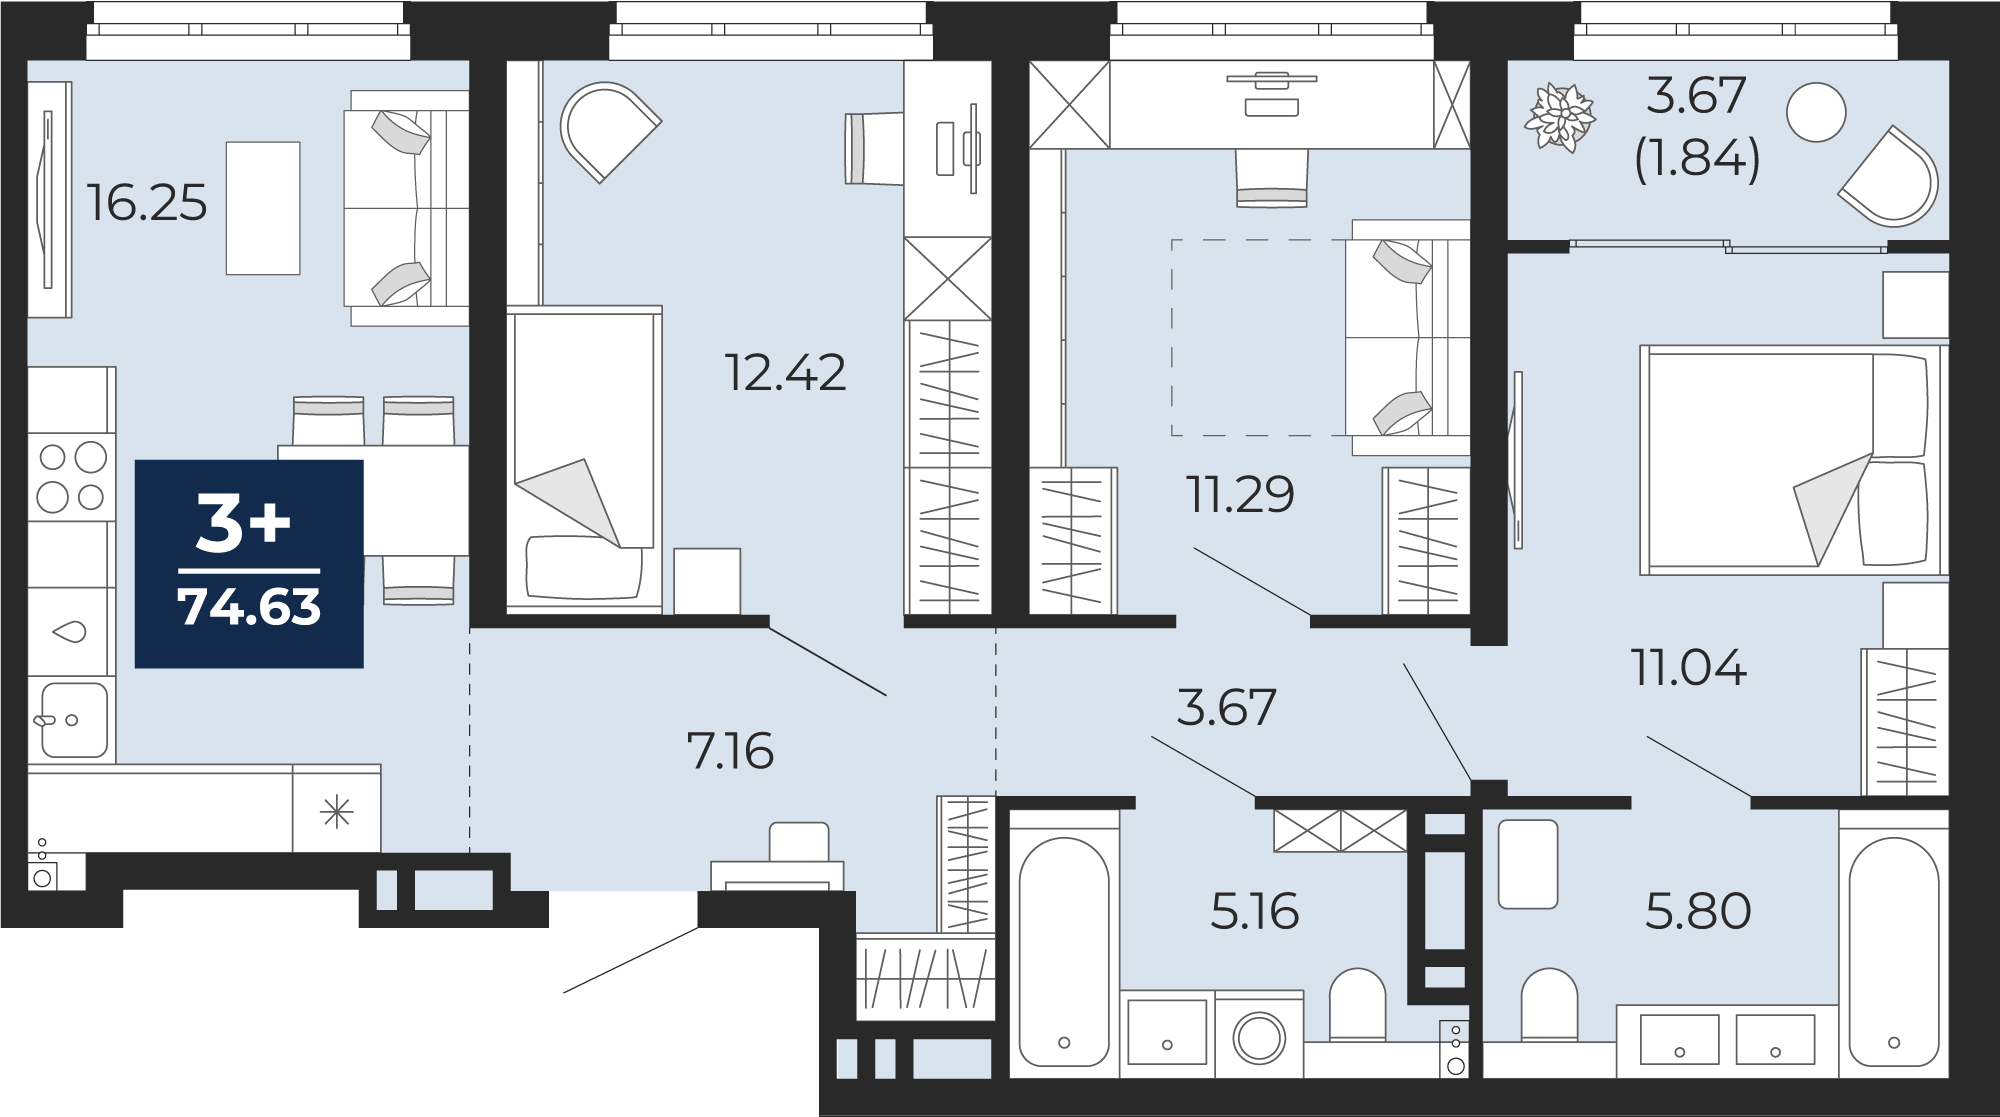 Квартира № 287, 3-комнатная, 74.63 кв. м, 13 этаж